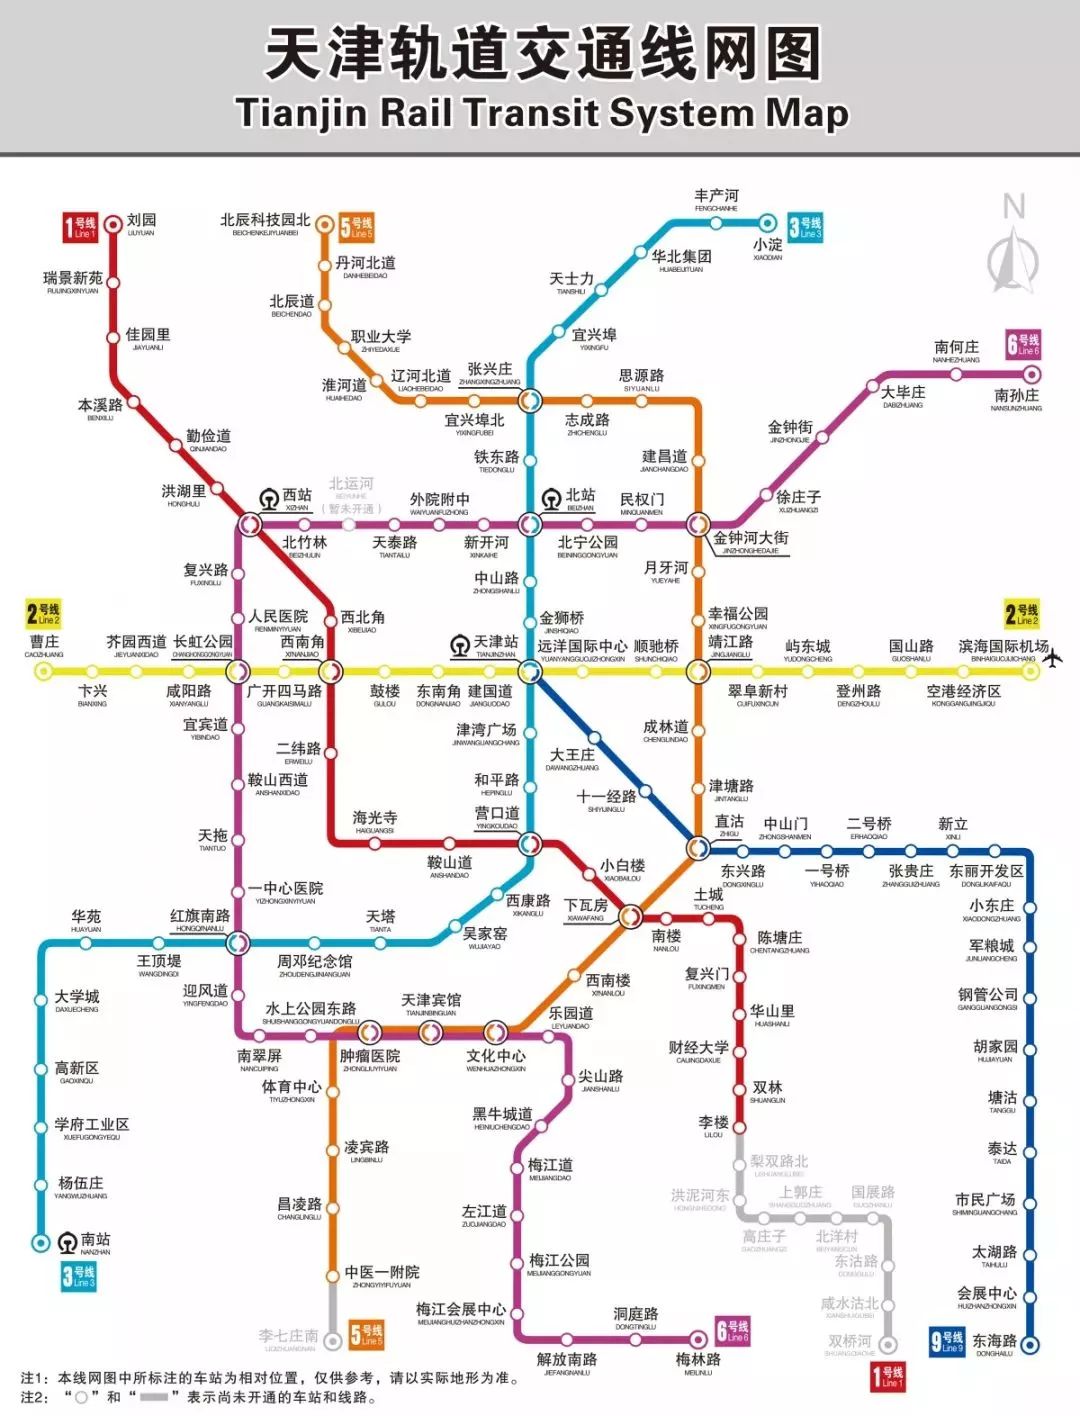 在天津坐地铁全程只需18元!